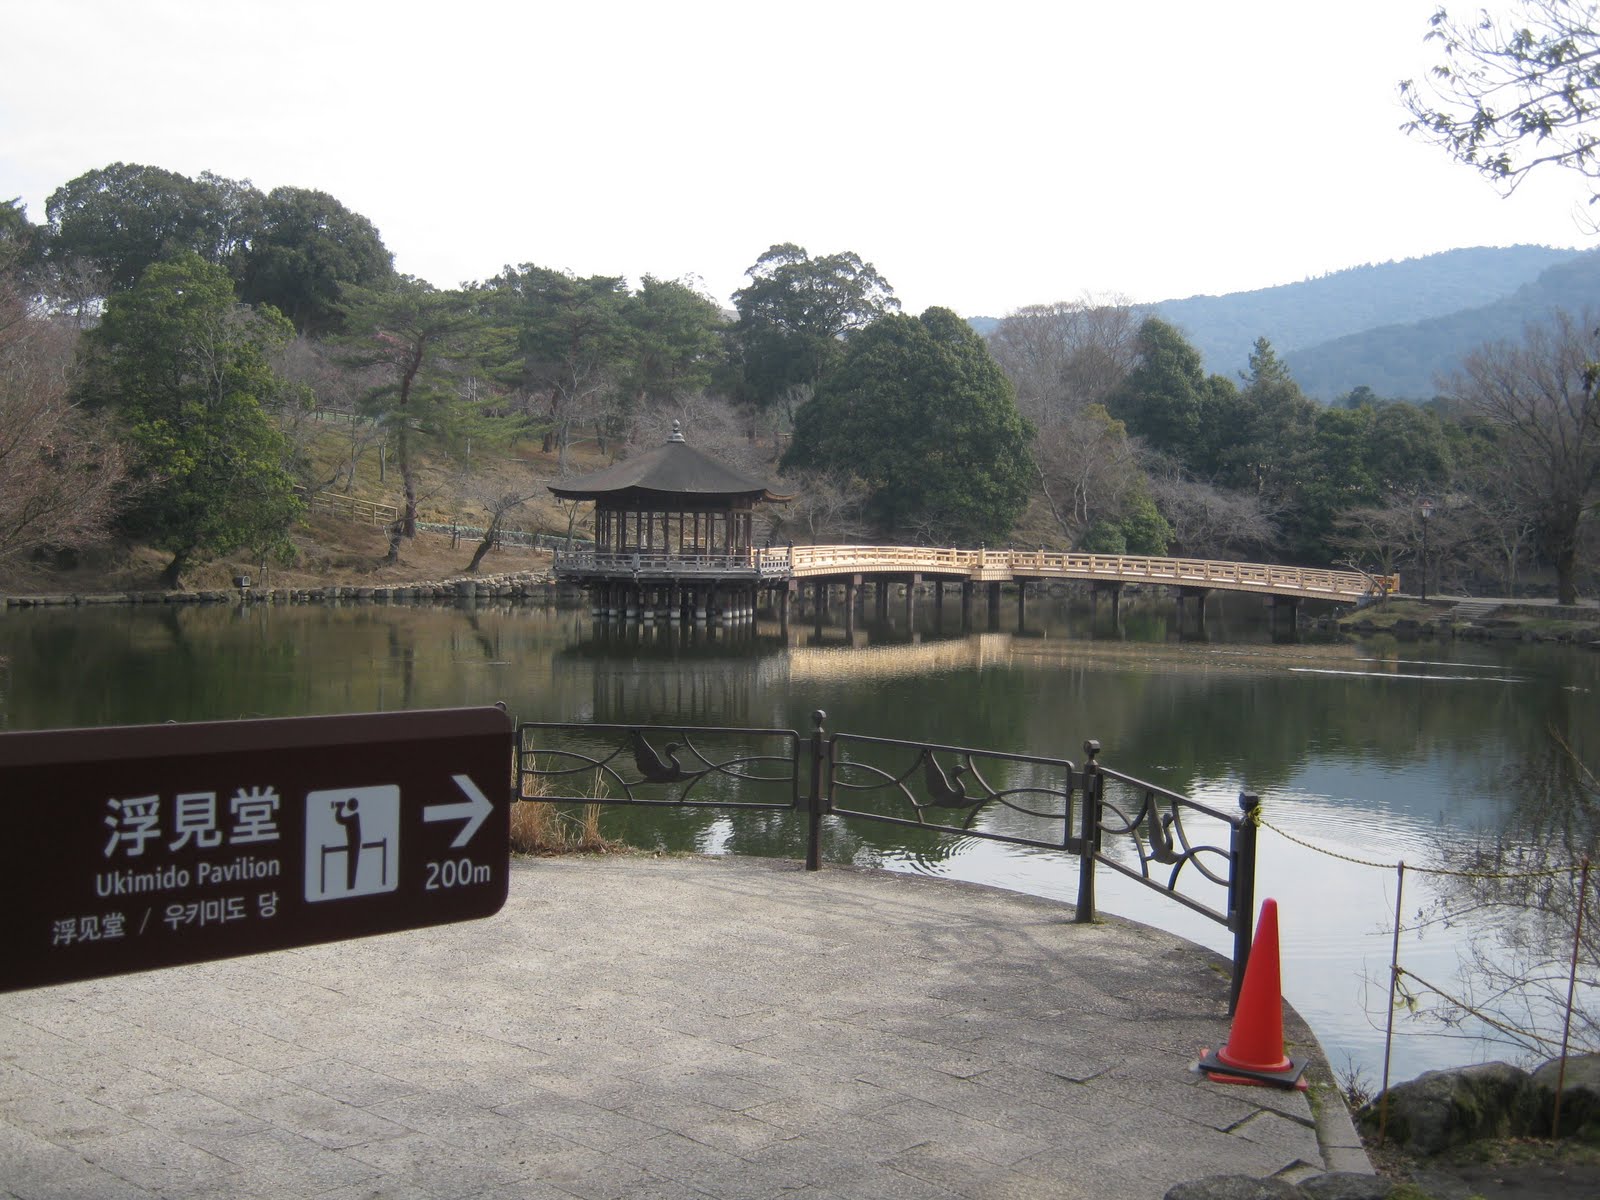 גן בוטני מאניו במקדש קאסוגאטאיישה – נארה – Kasugataisha Shrine MANYOU Botanical Garden